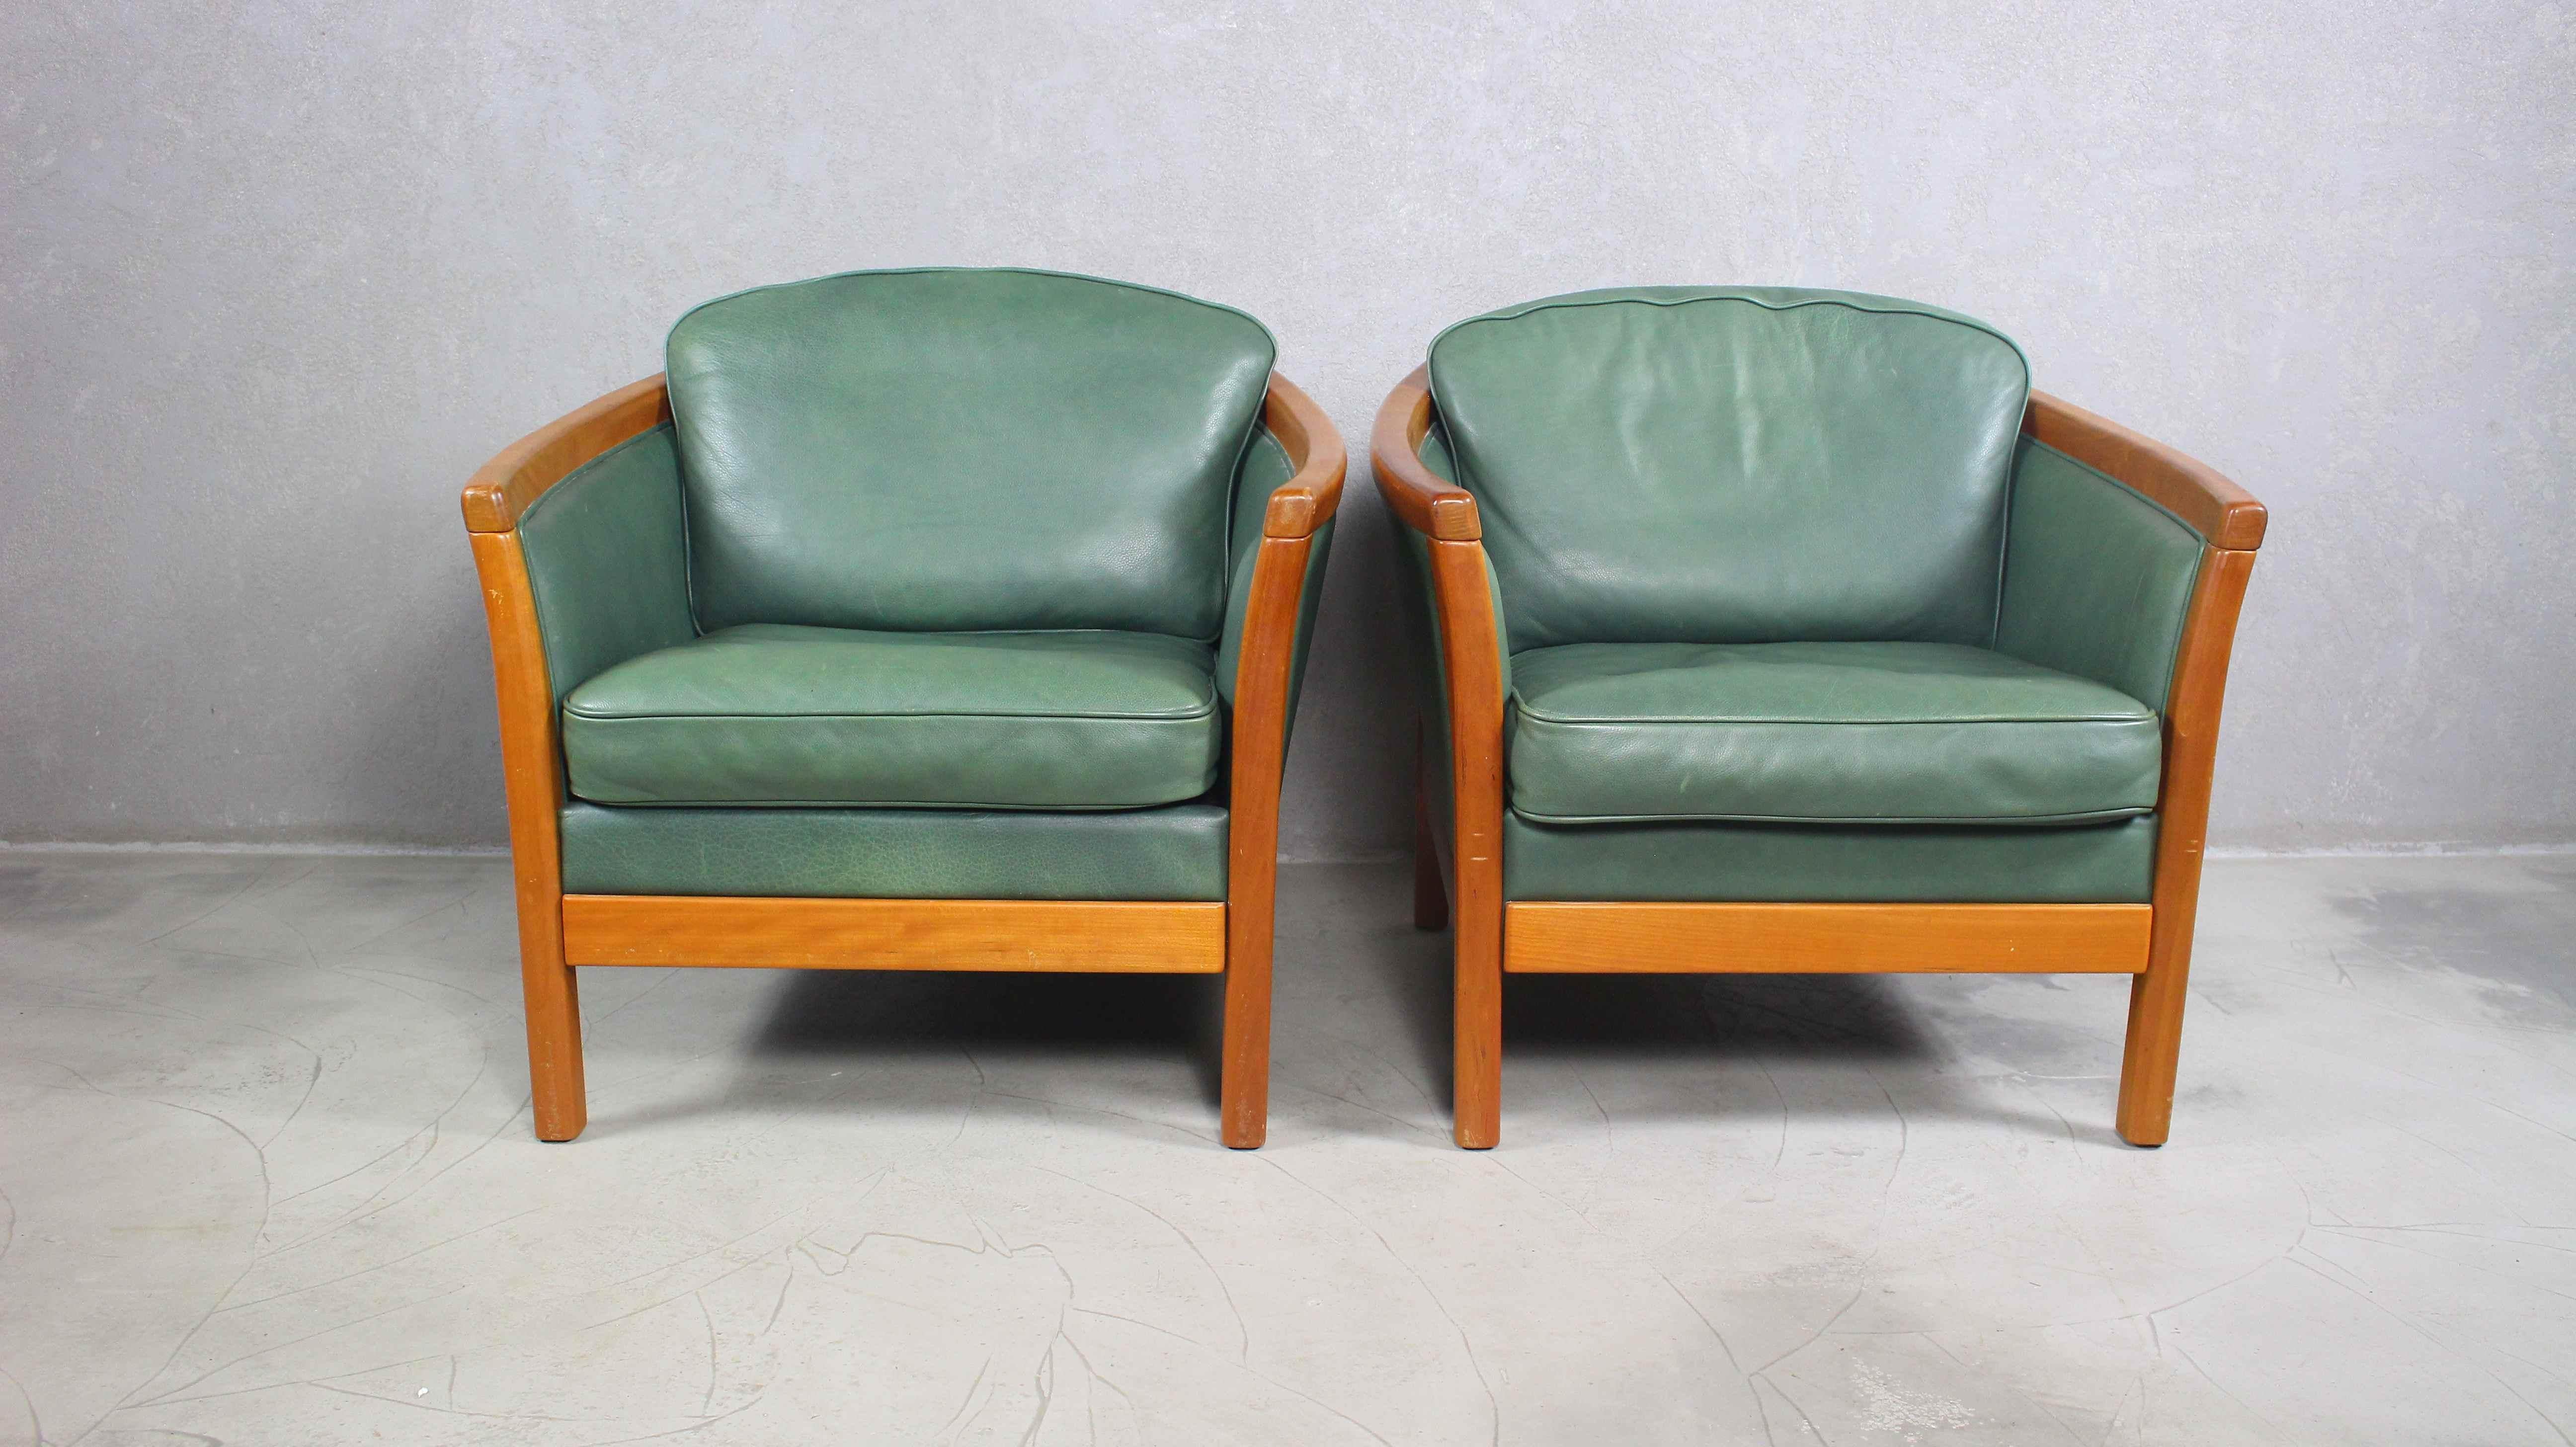 Ein Paar grüne Lederstühle im Vintage-Stil.
Entwurf Mogens Hansen.
Produziert in Dänemark in den 1980er/90er Jahren.
Hergestellt aus massivem Kirschholz und hochwertigem Naturleder in flaschengrüner Farbe.